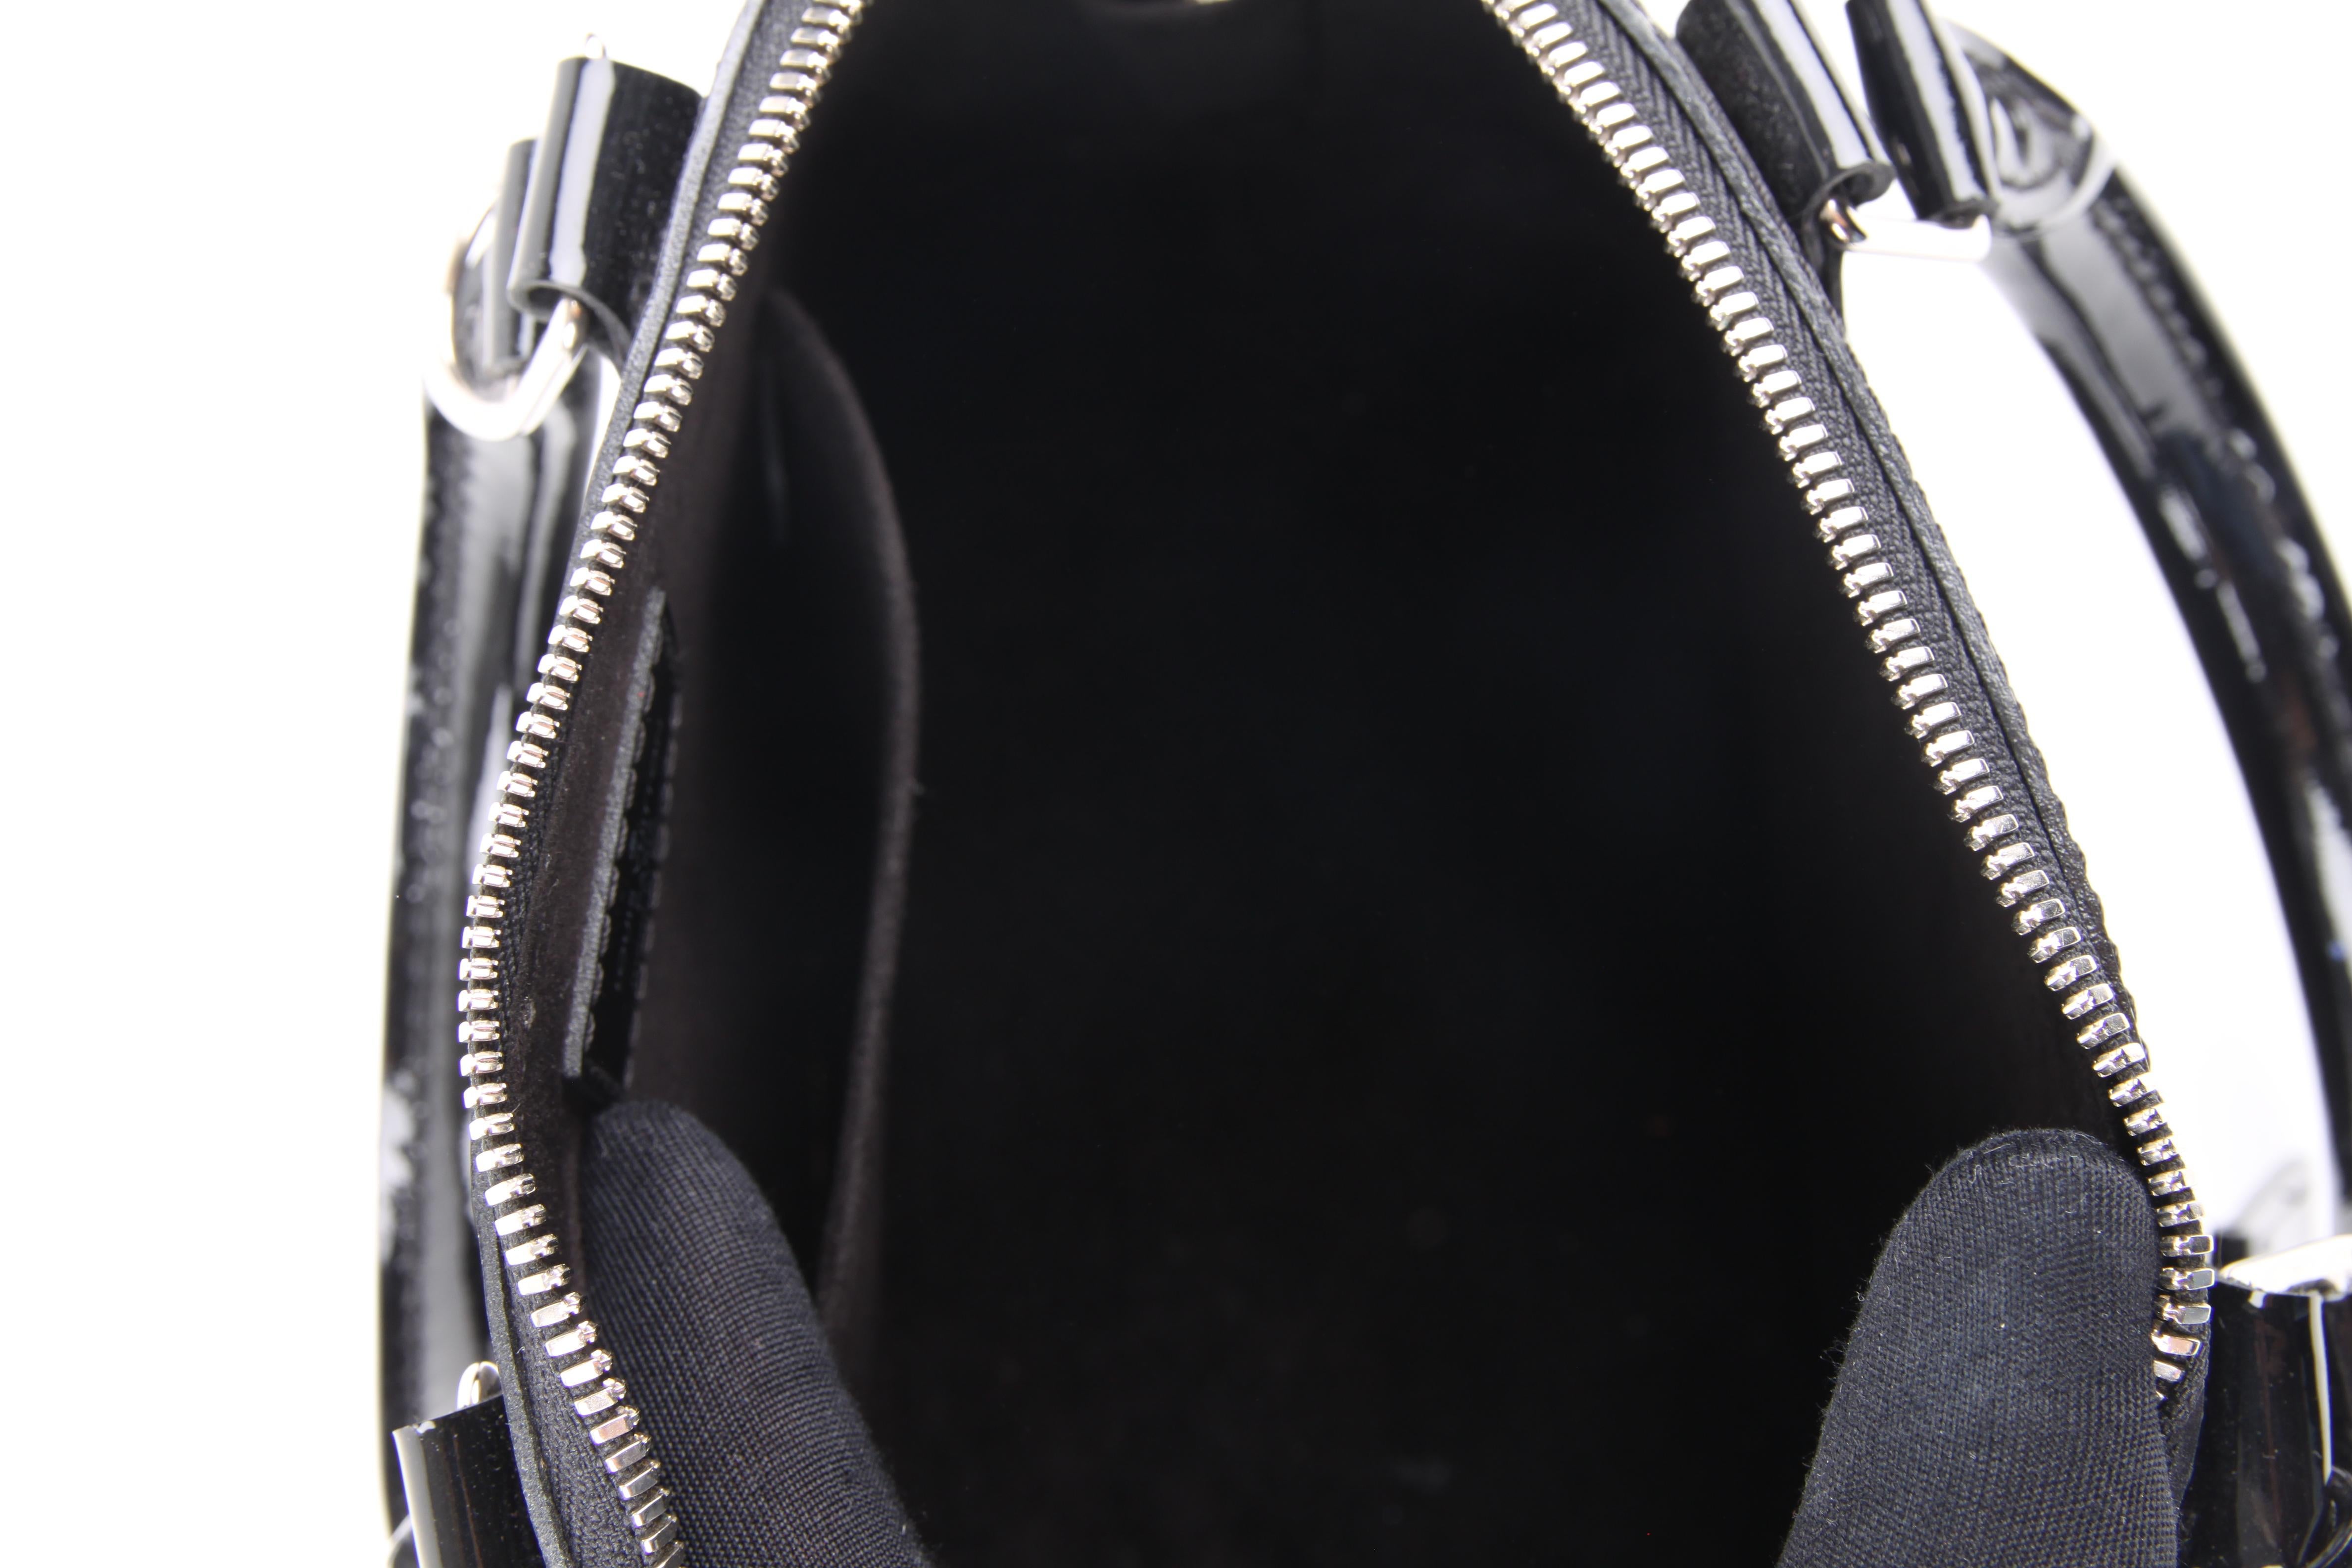   Louis Vuitton Alma BB Bag Epi - black   Louis Vuitton Alma BB Bag Epi - black  2